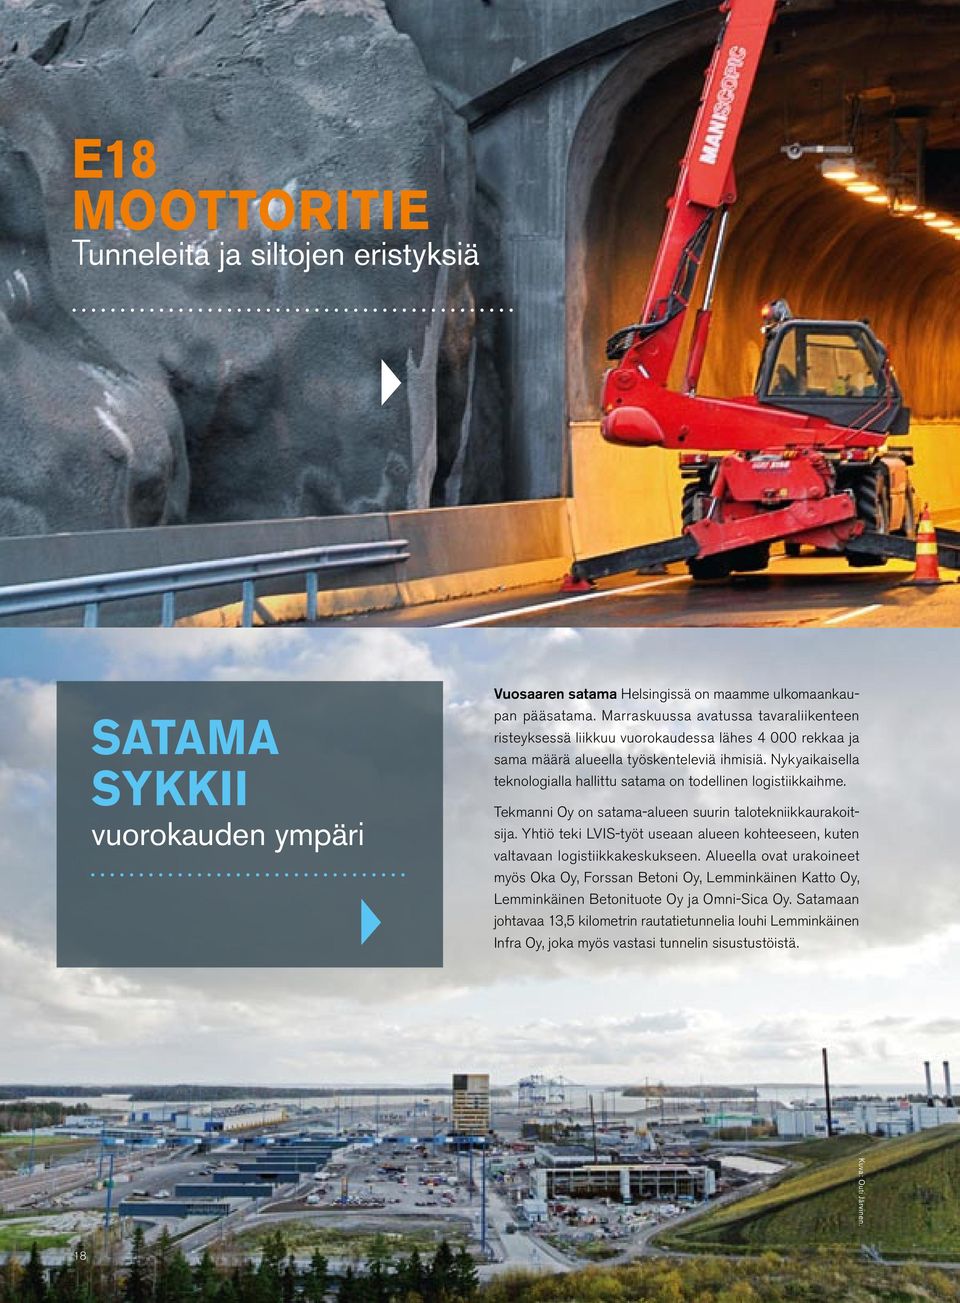 Nykyaikaisella teknologialla hallittu satama on todellinen logistiikkaihme. Tekmanni Oy on satama-alueen suurin talotekniikkaurakoitsija.